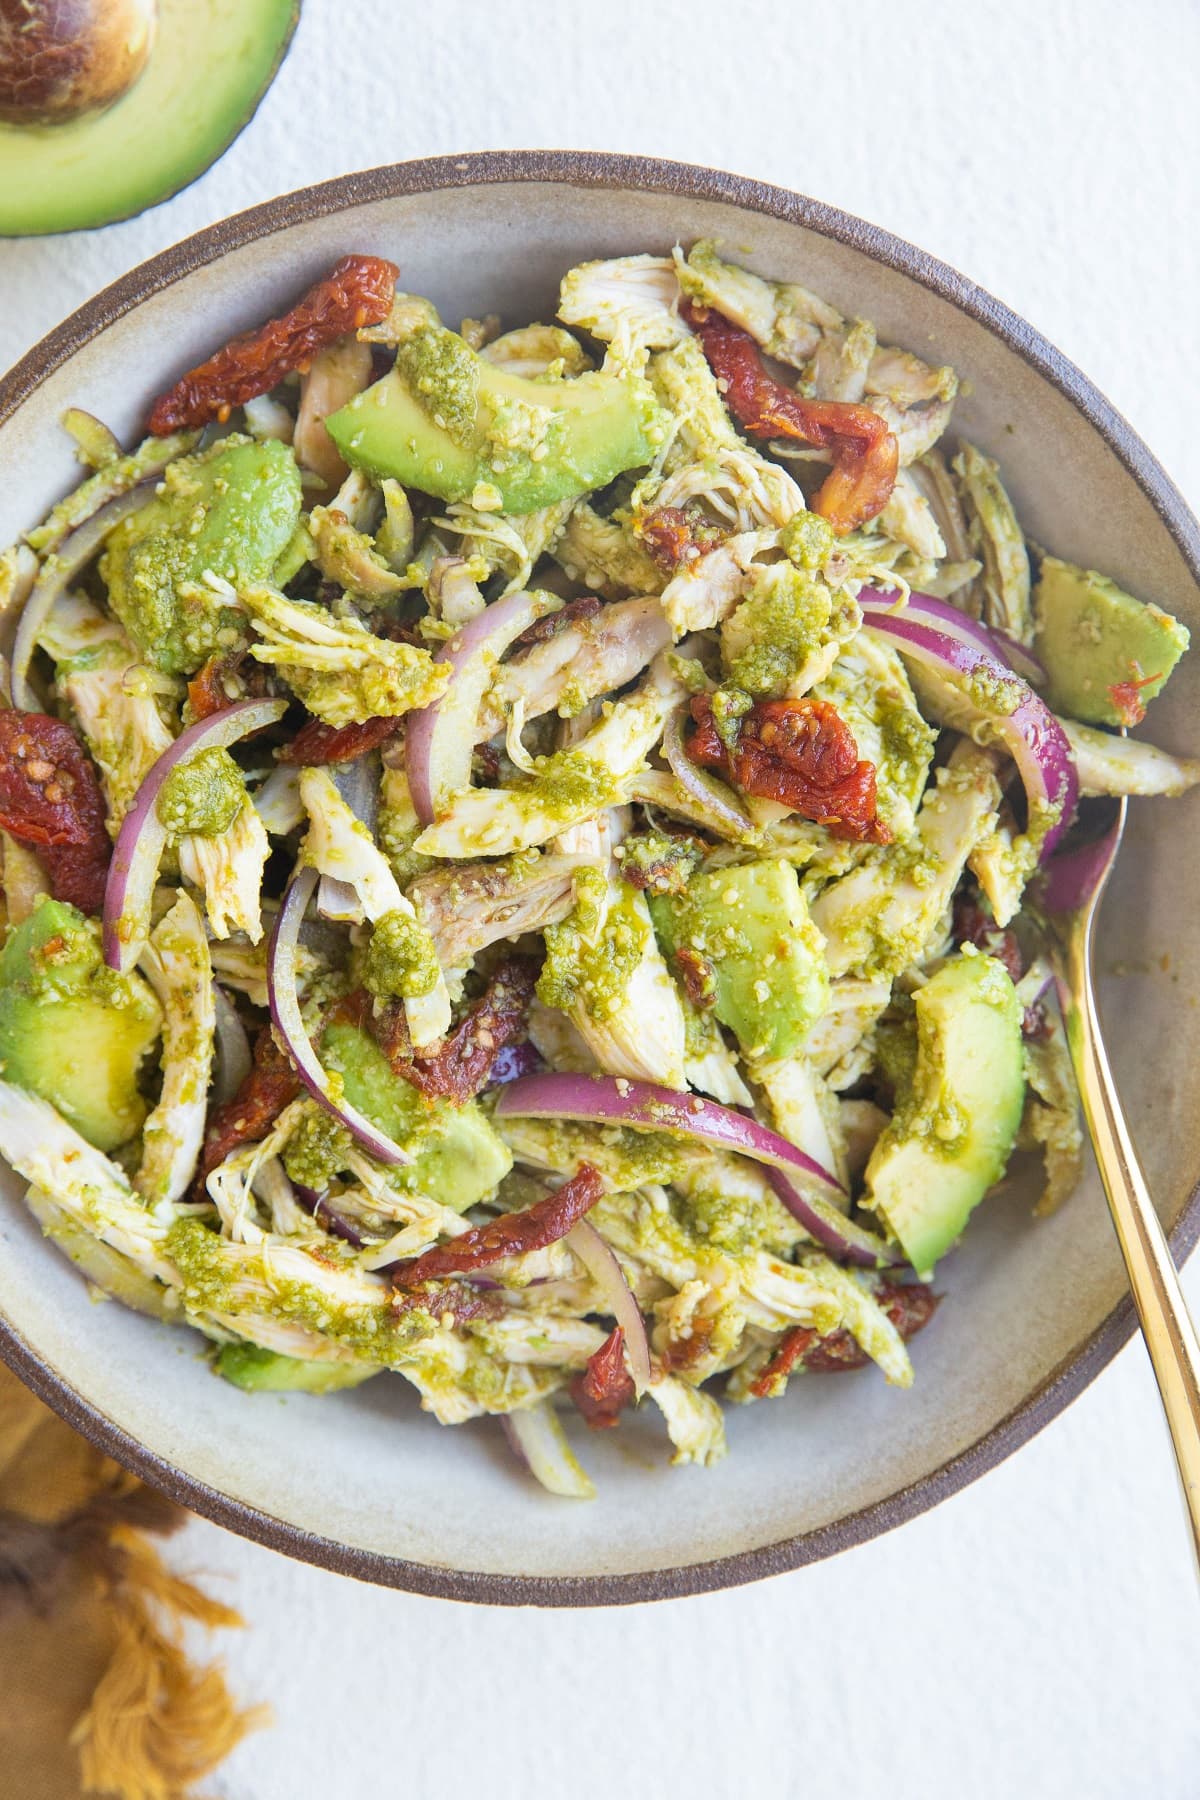 Pesto Chicken Salad with Avocado